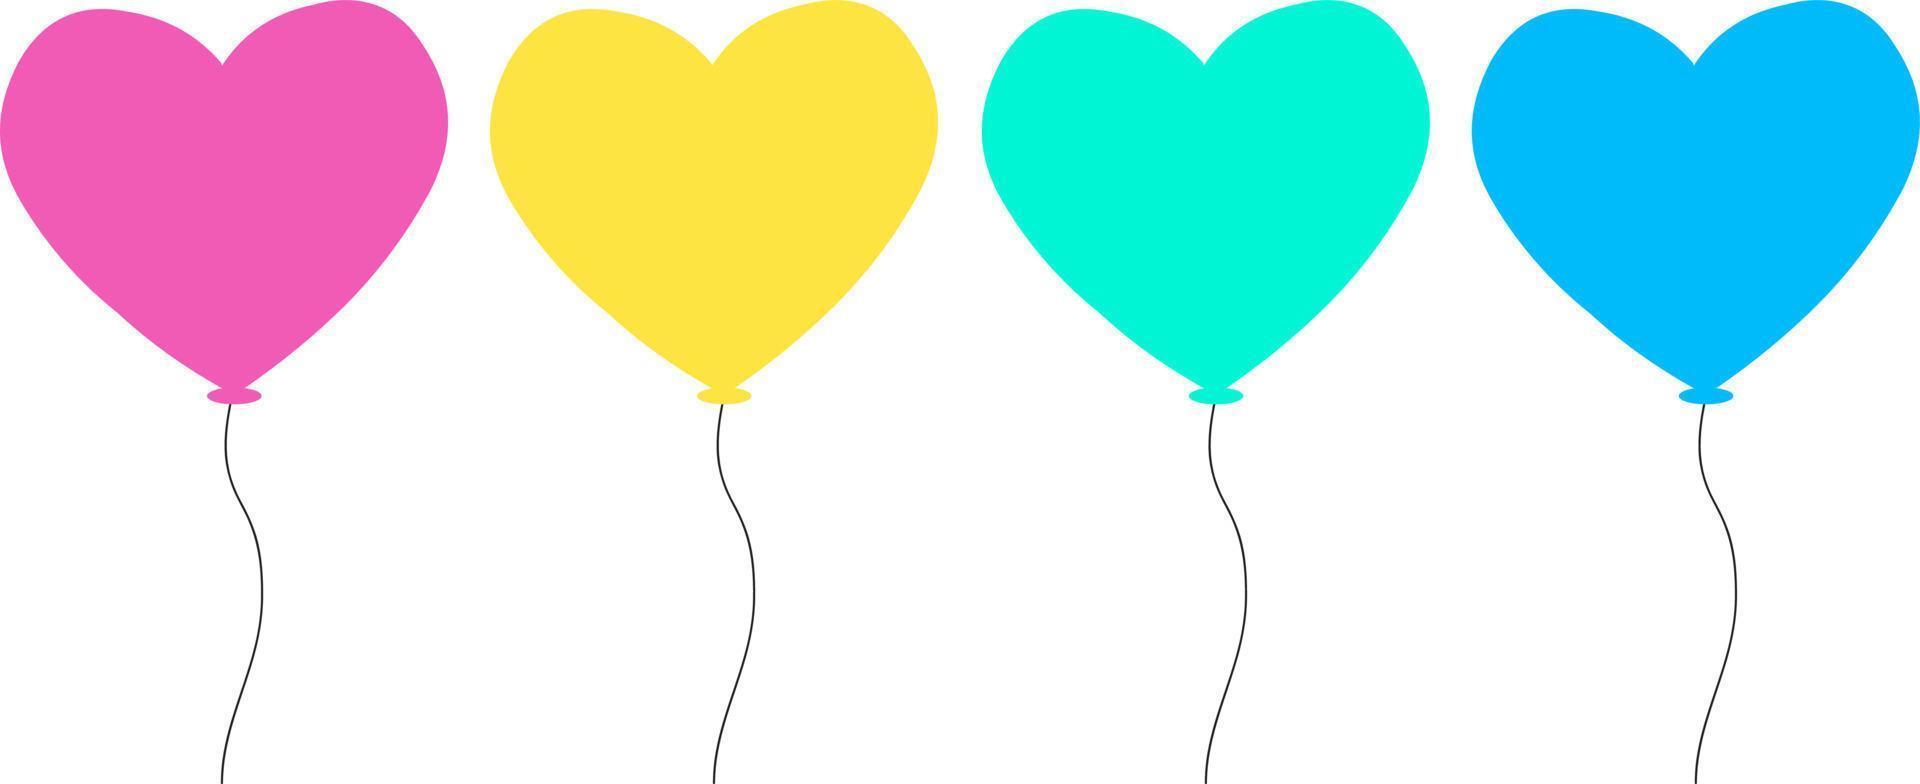 Herzballons in verschiedenen Farben. Heißluftballon in Herzform. dekorationselemente für valentinstag oder geburtstagsfeier. eps10-Vektor vektor